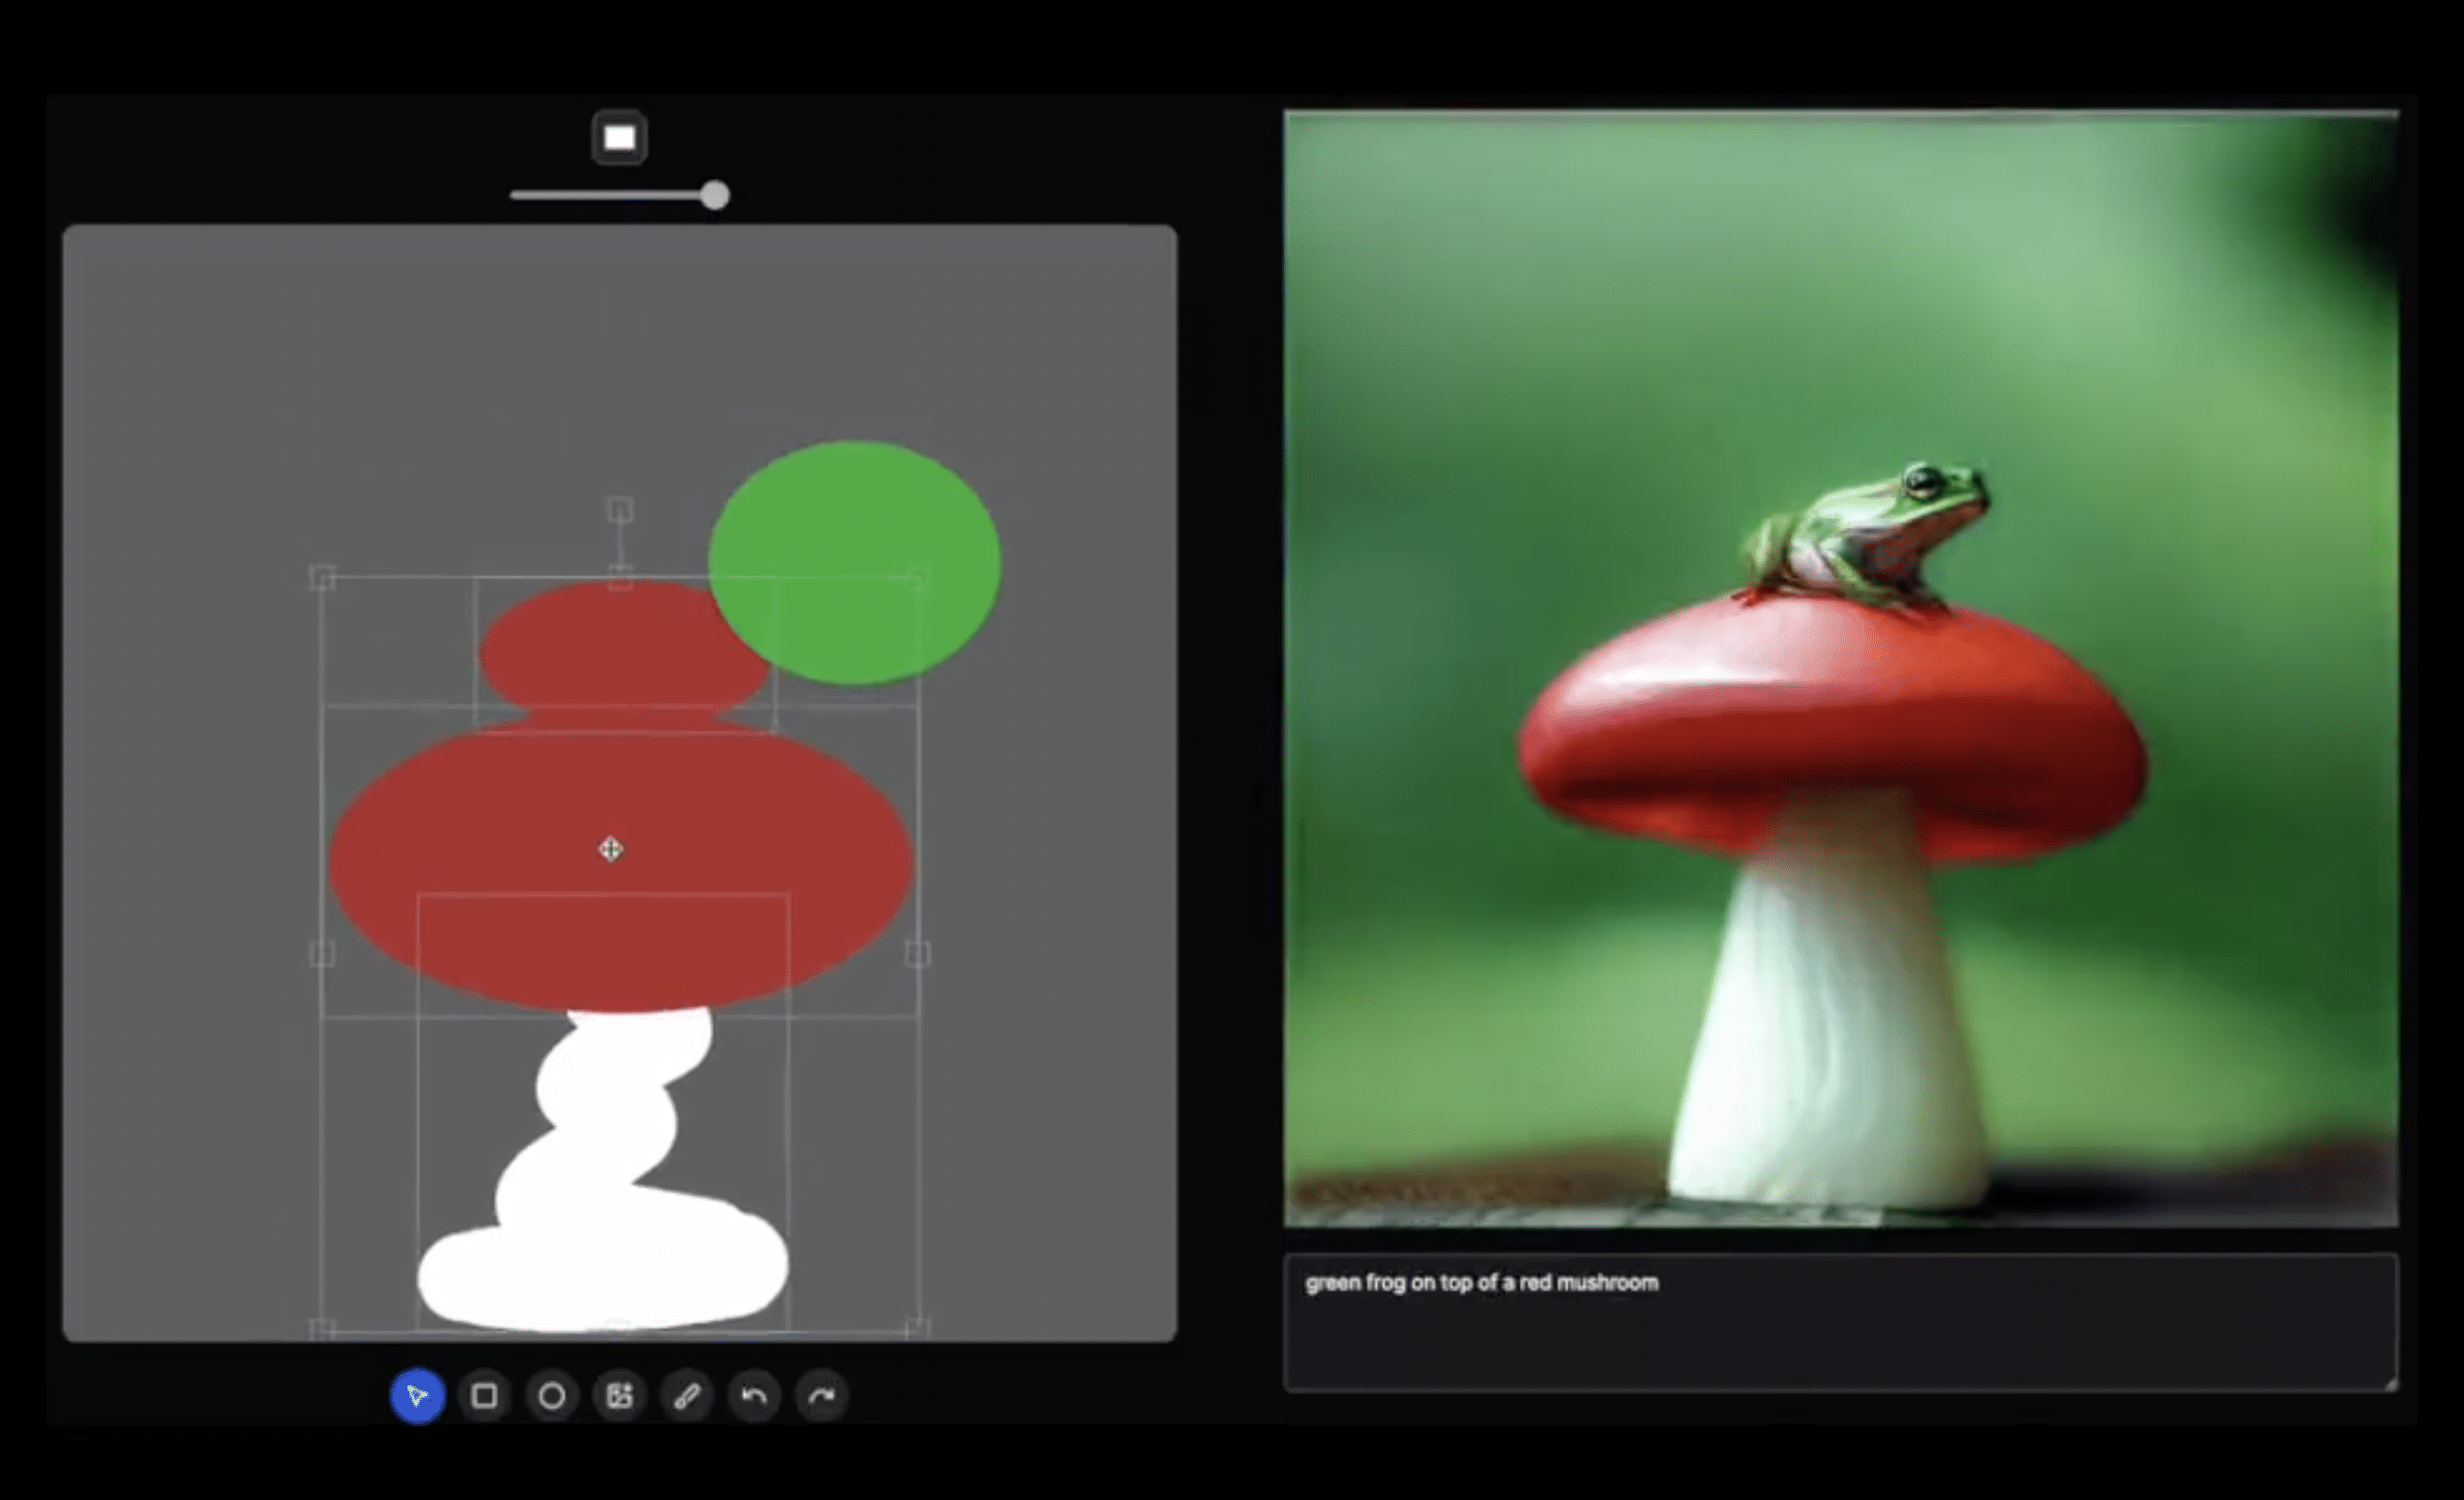 links eine sehr einfache Illustration eines Pilzes, rechts ein fotorealistisches bild